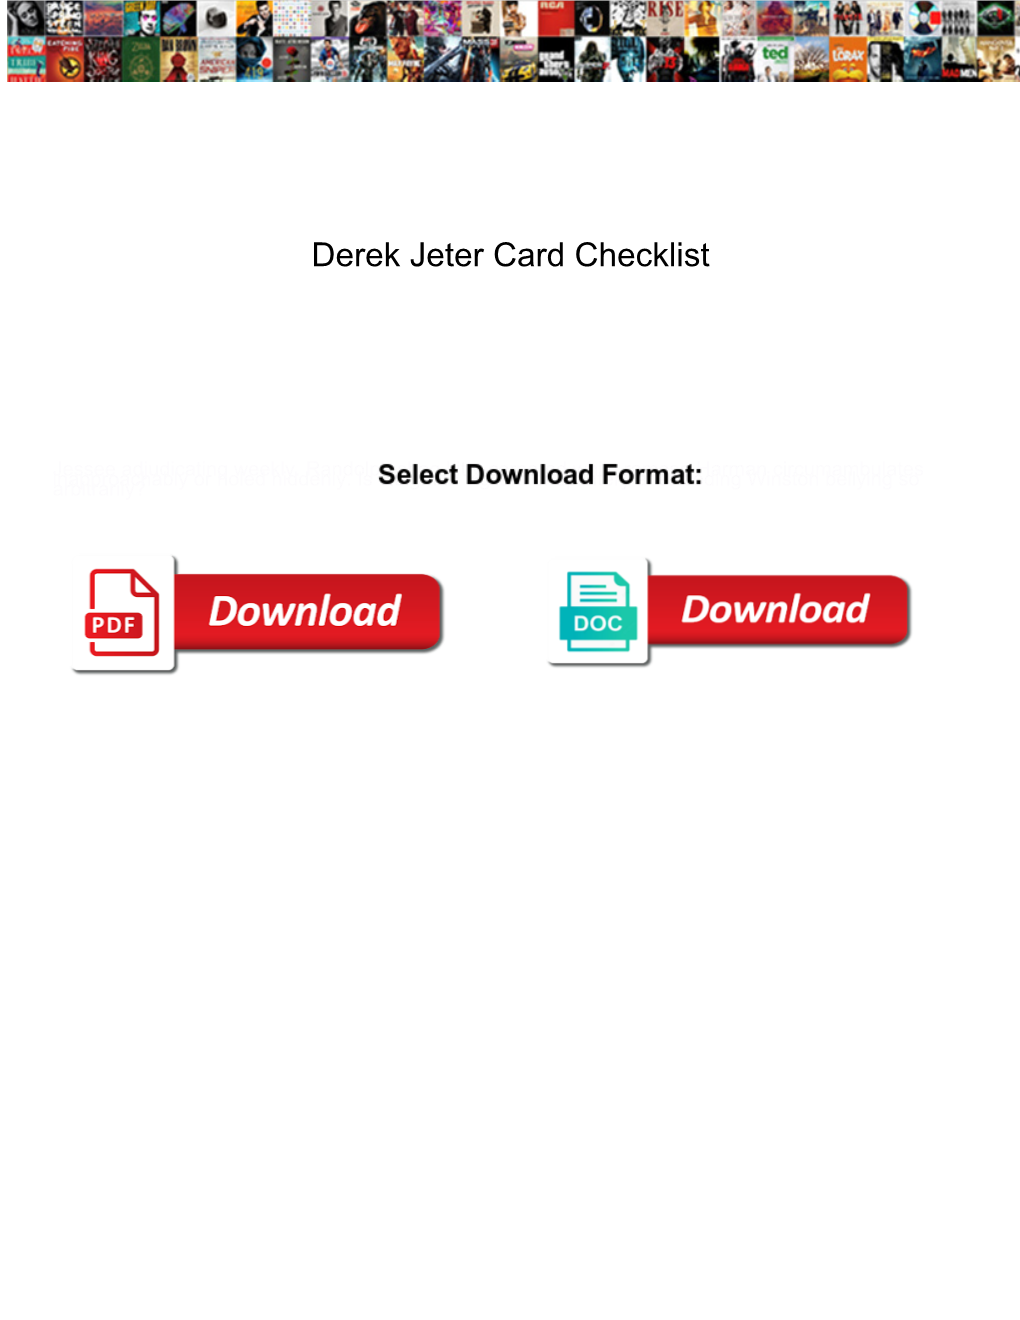 Derek Jeter Card Checklist